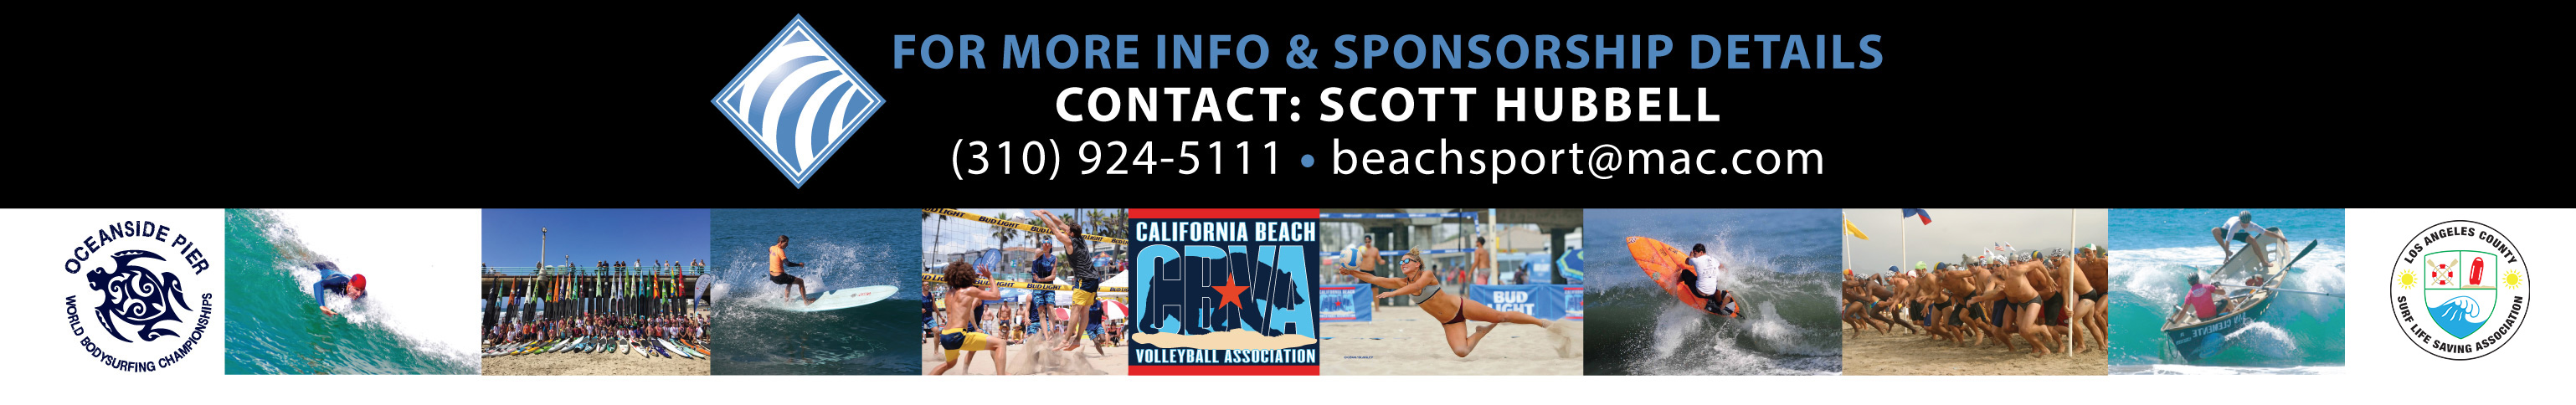 Beachsport.org - Contact Bar